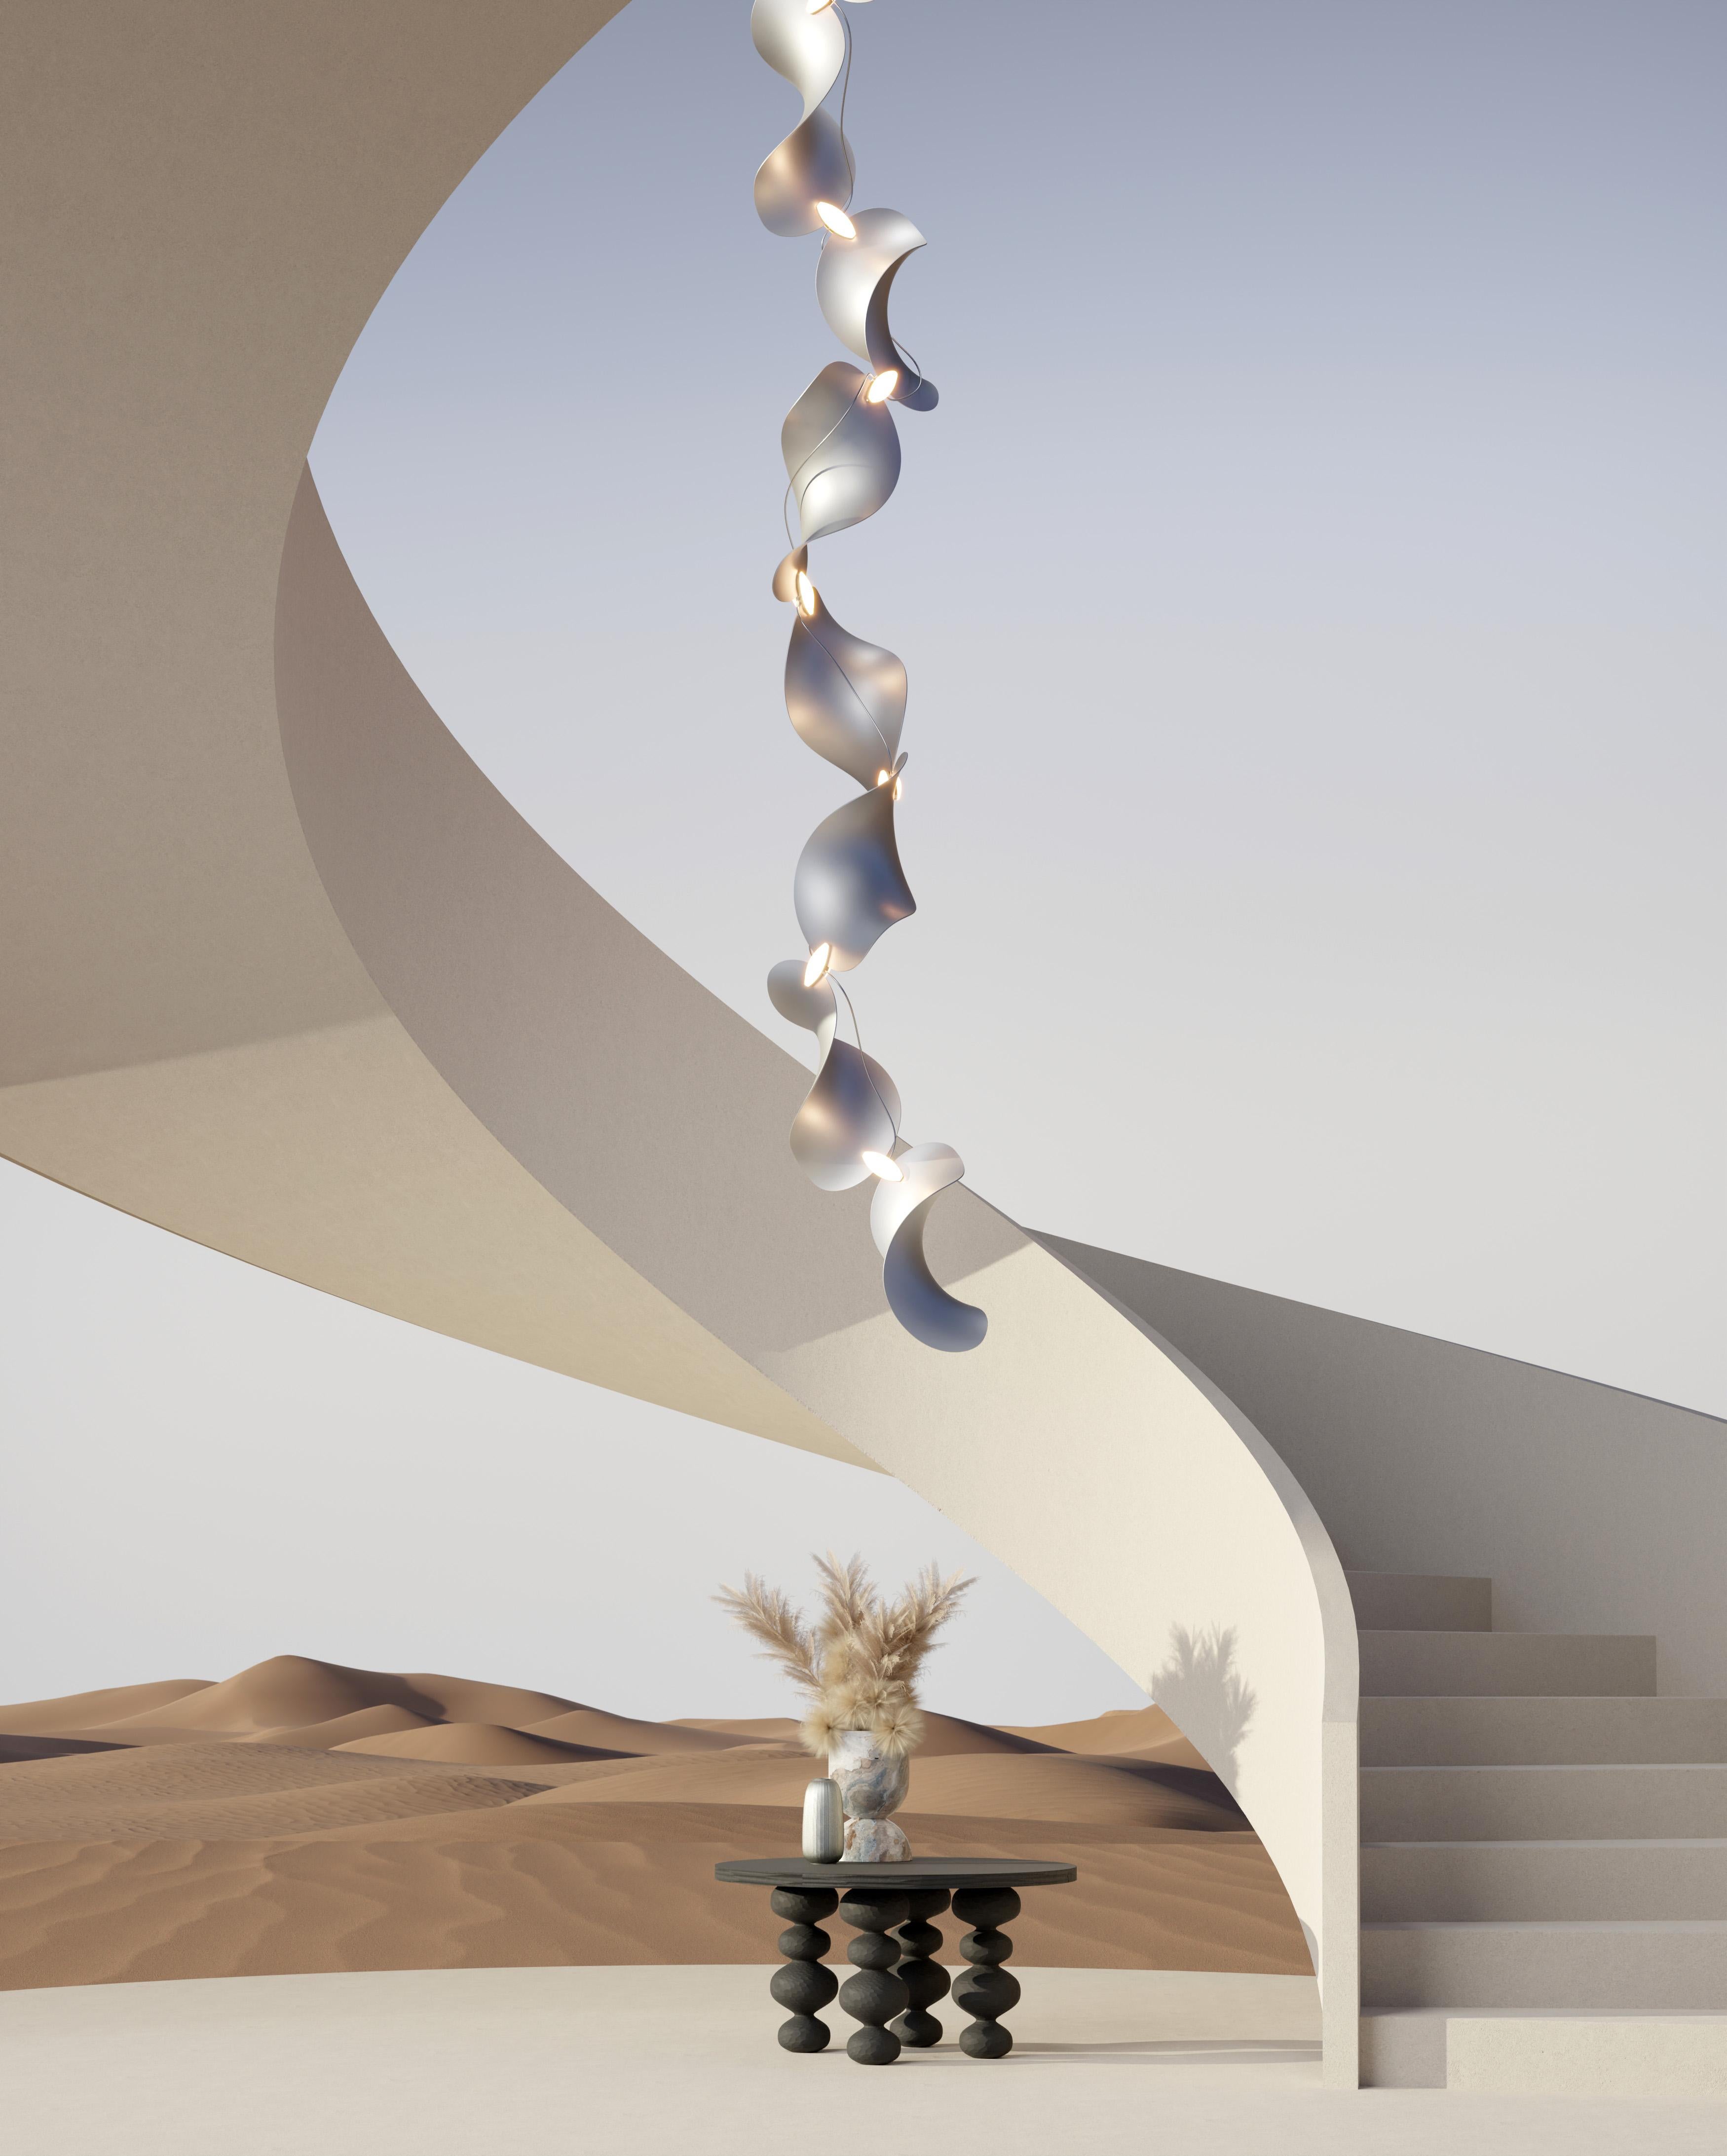 Lampe à suspension 'Dune 8V' de Daniel Becker en aluminium anodisé pour objets mousse

Conçue par l'artiste berlinois Daniel Becker, la collection 